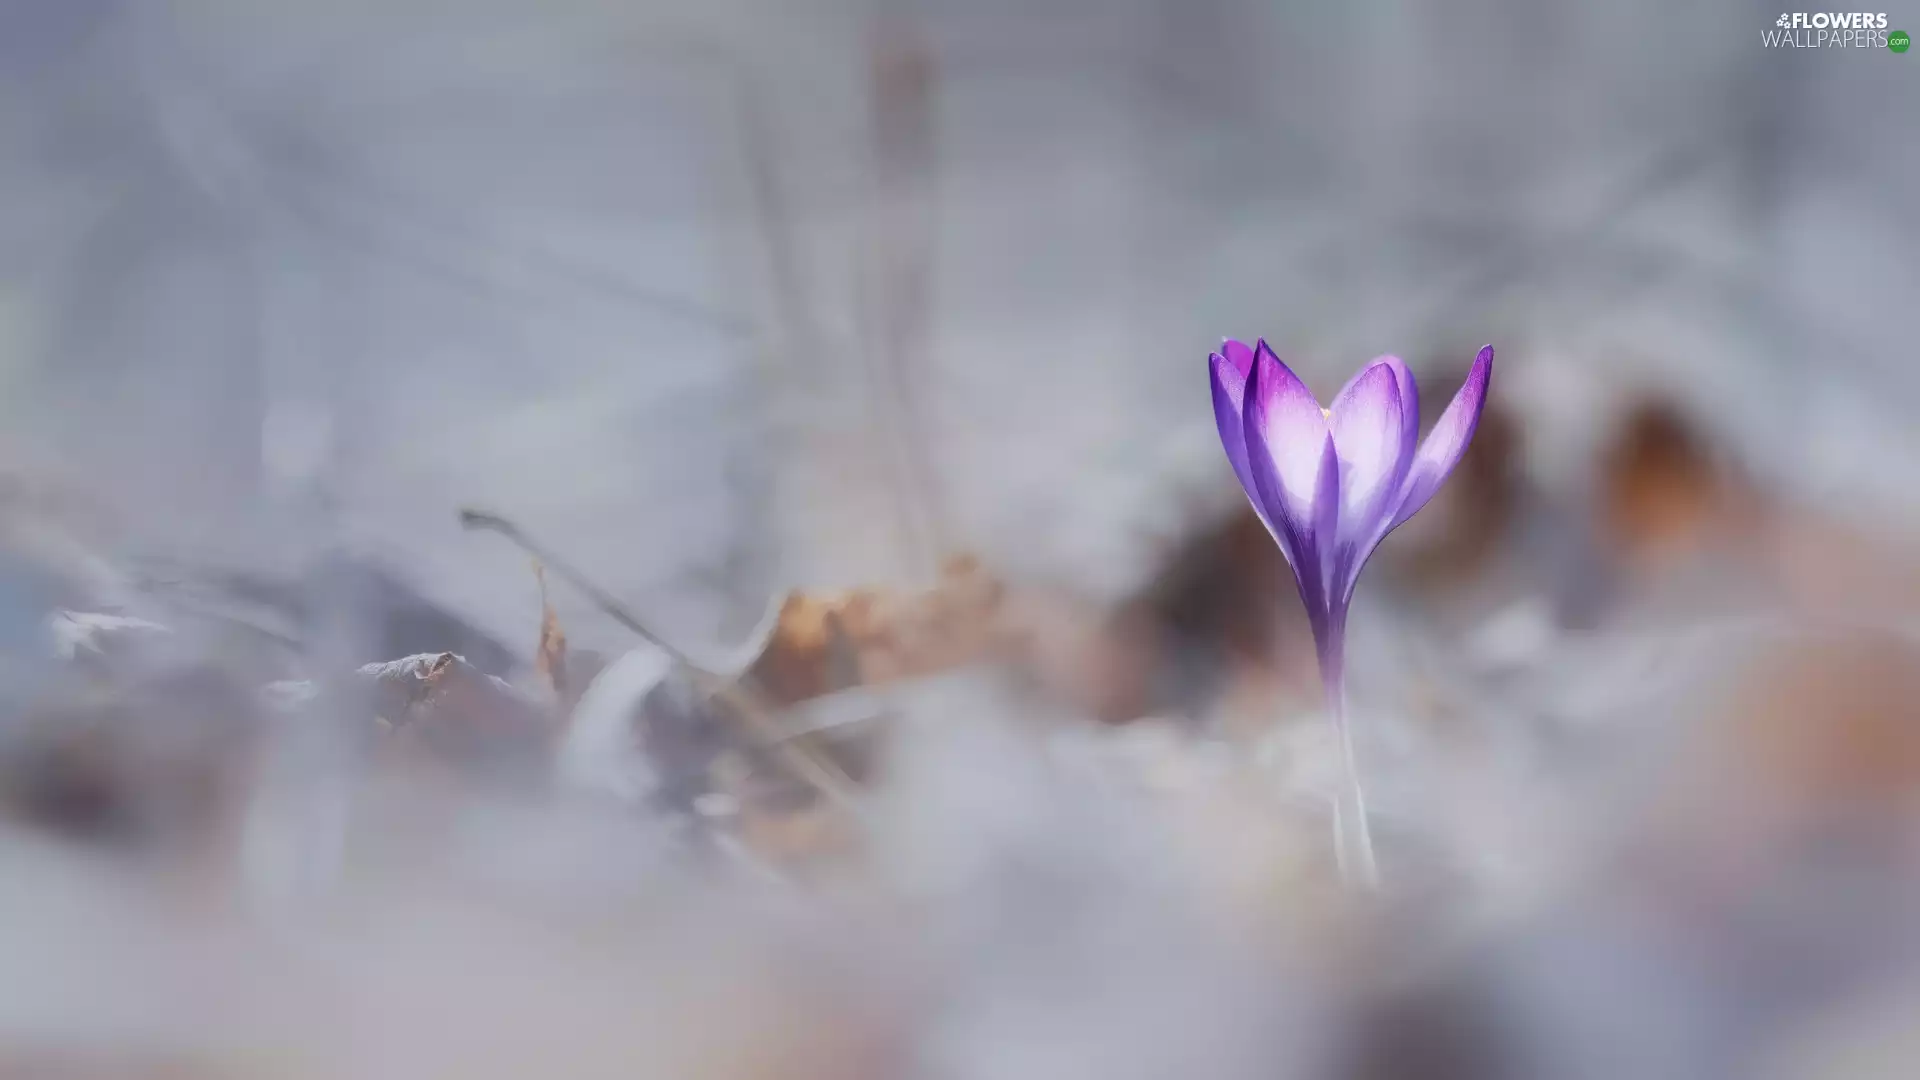 Violet, crocus, blurry background, Flower